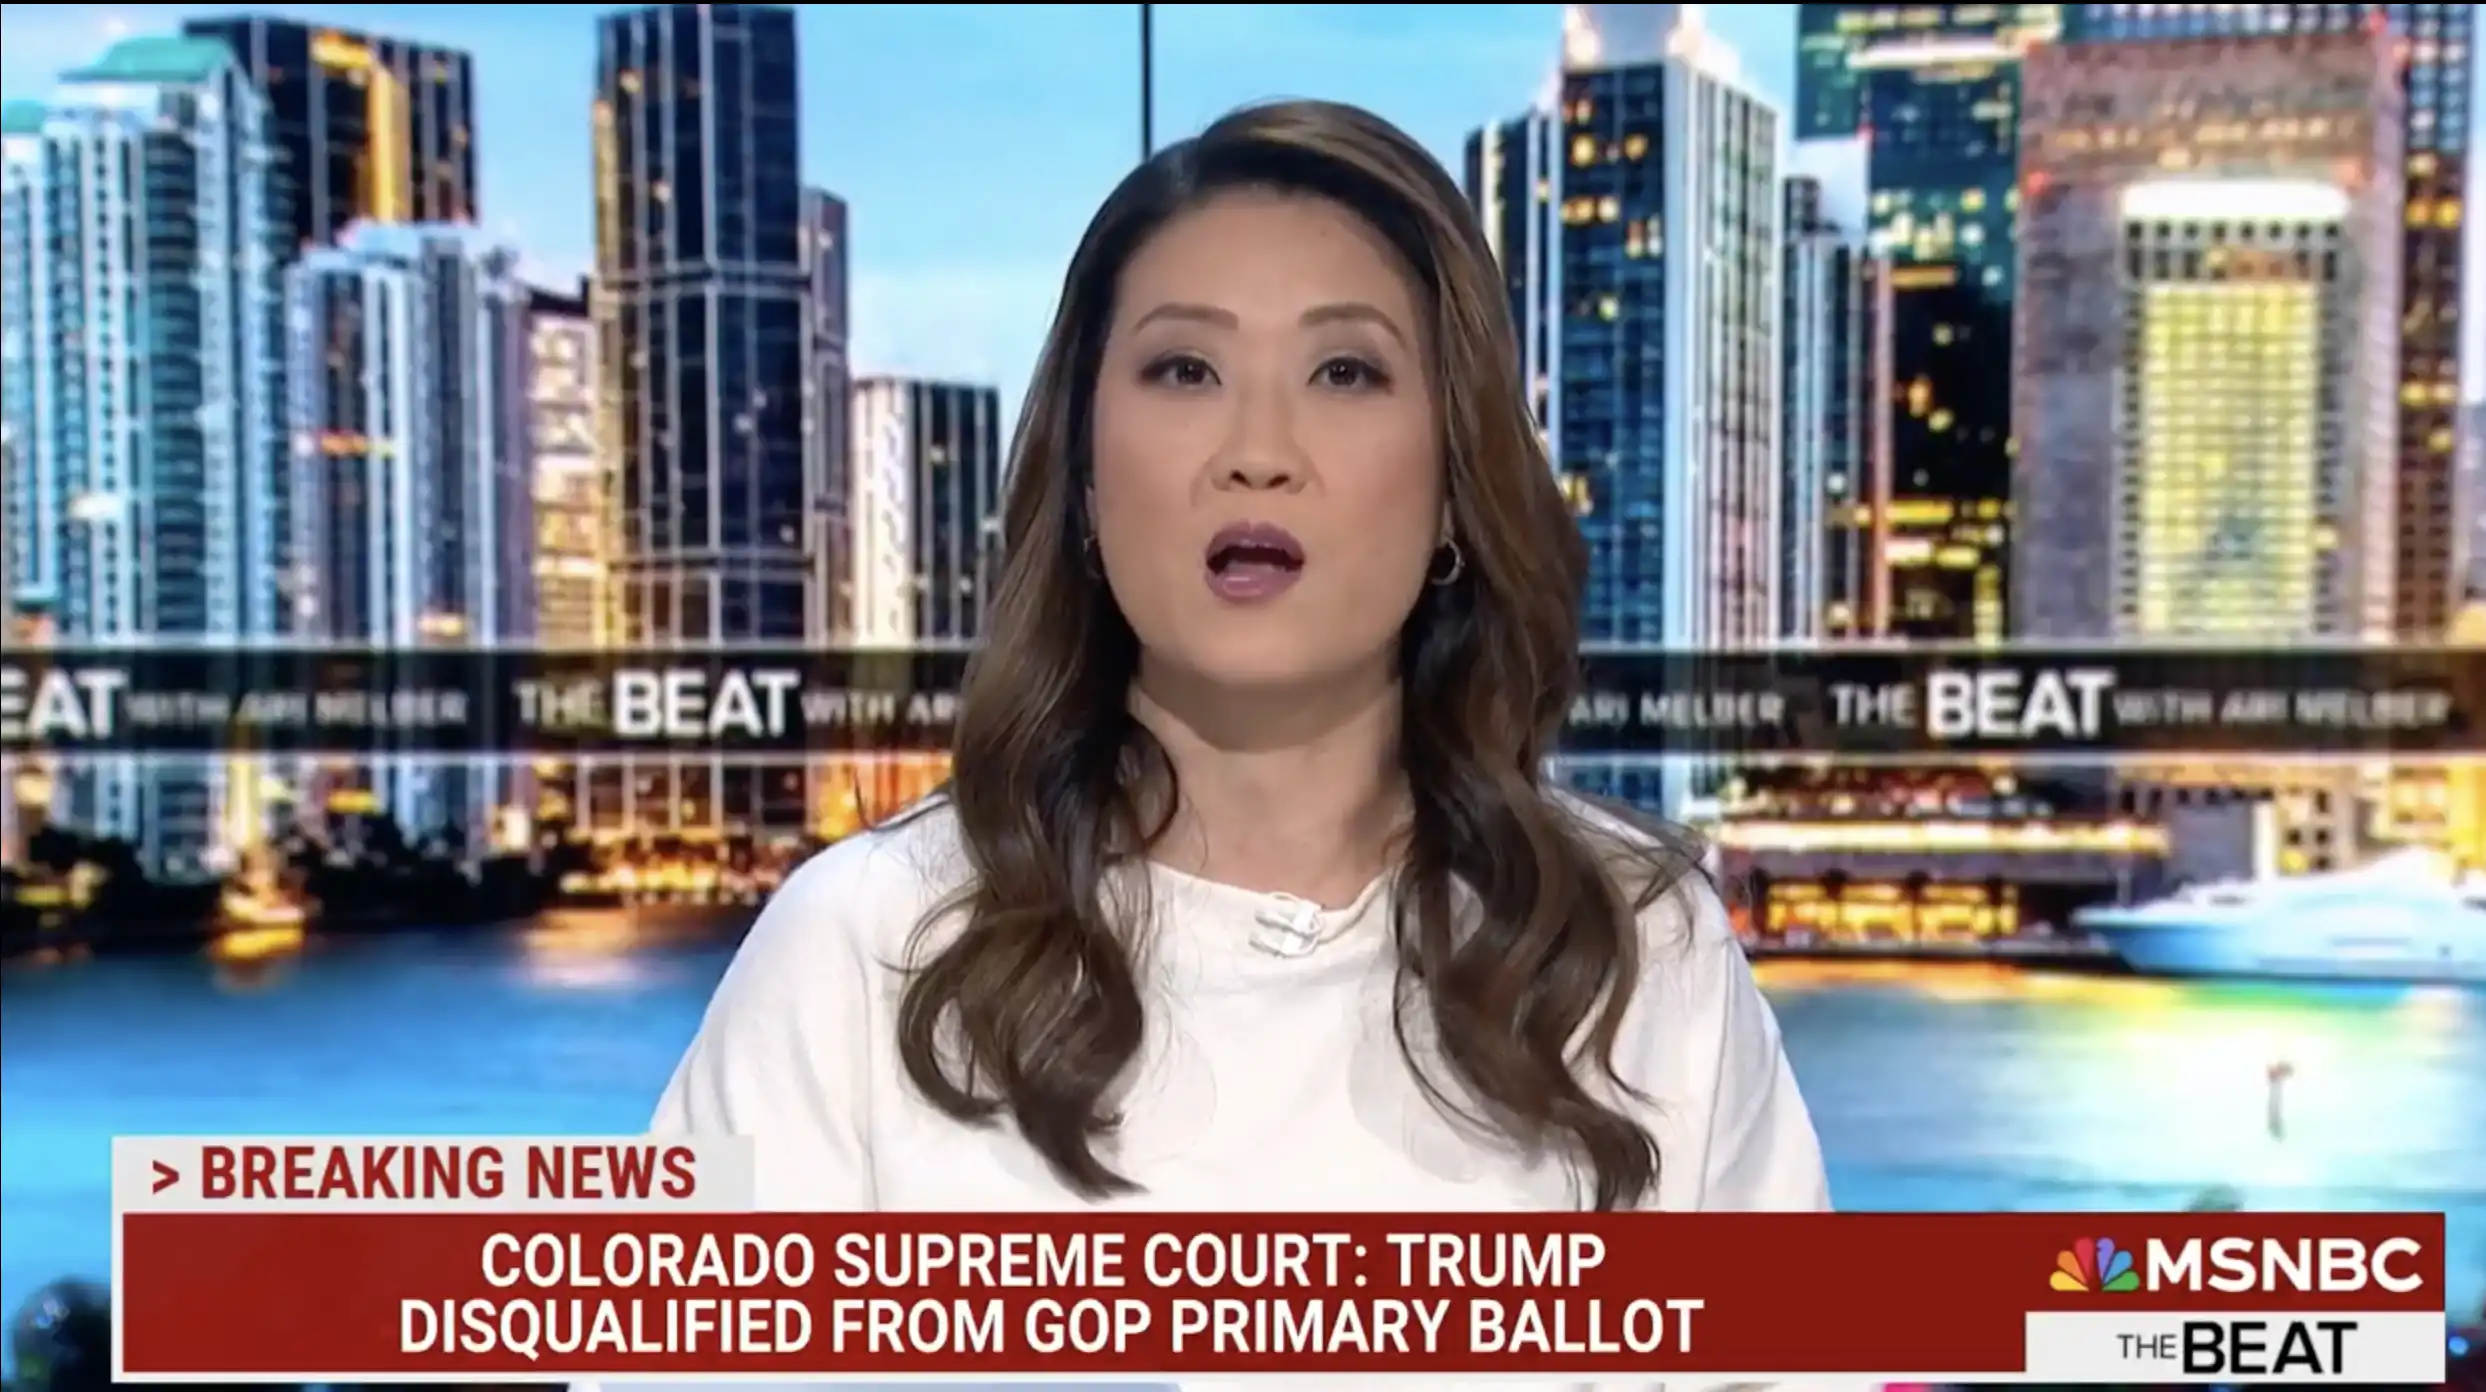 Colorado Supreme Court Removes Trump from Ballot